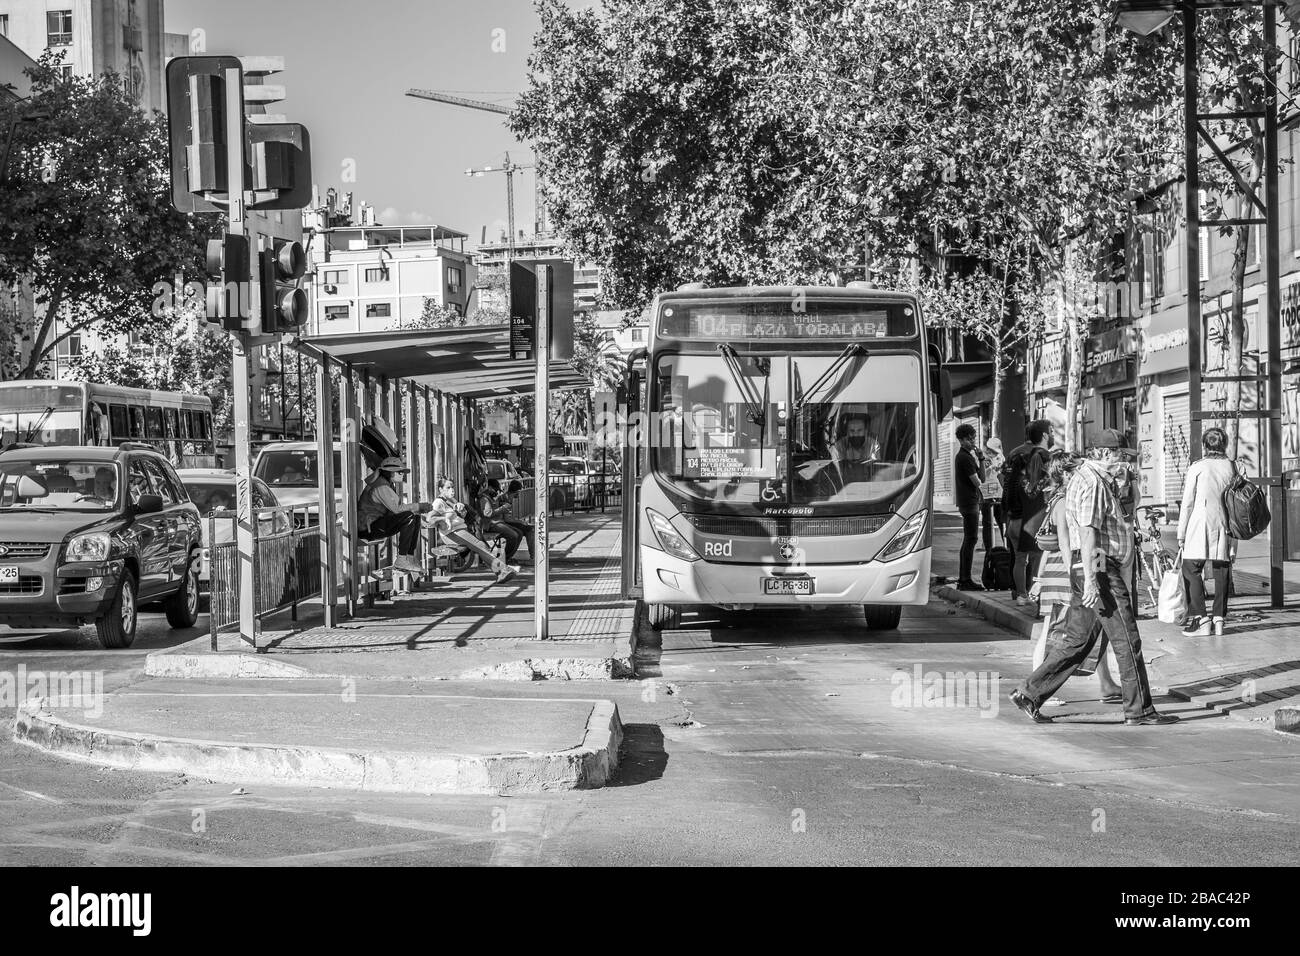 Les transports publics avec des bus vides dans les rues Providencia au cours des dernières heures avant que le COVID-19 Coronavirus ne verrouille Santiago, Chili, 26.03.2020 Banque D'Images